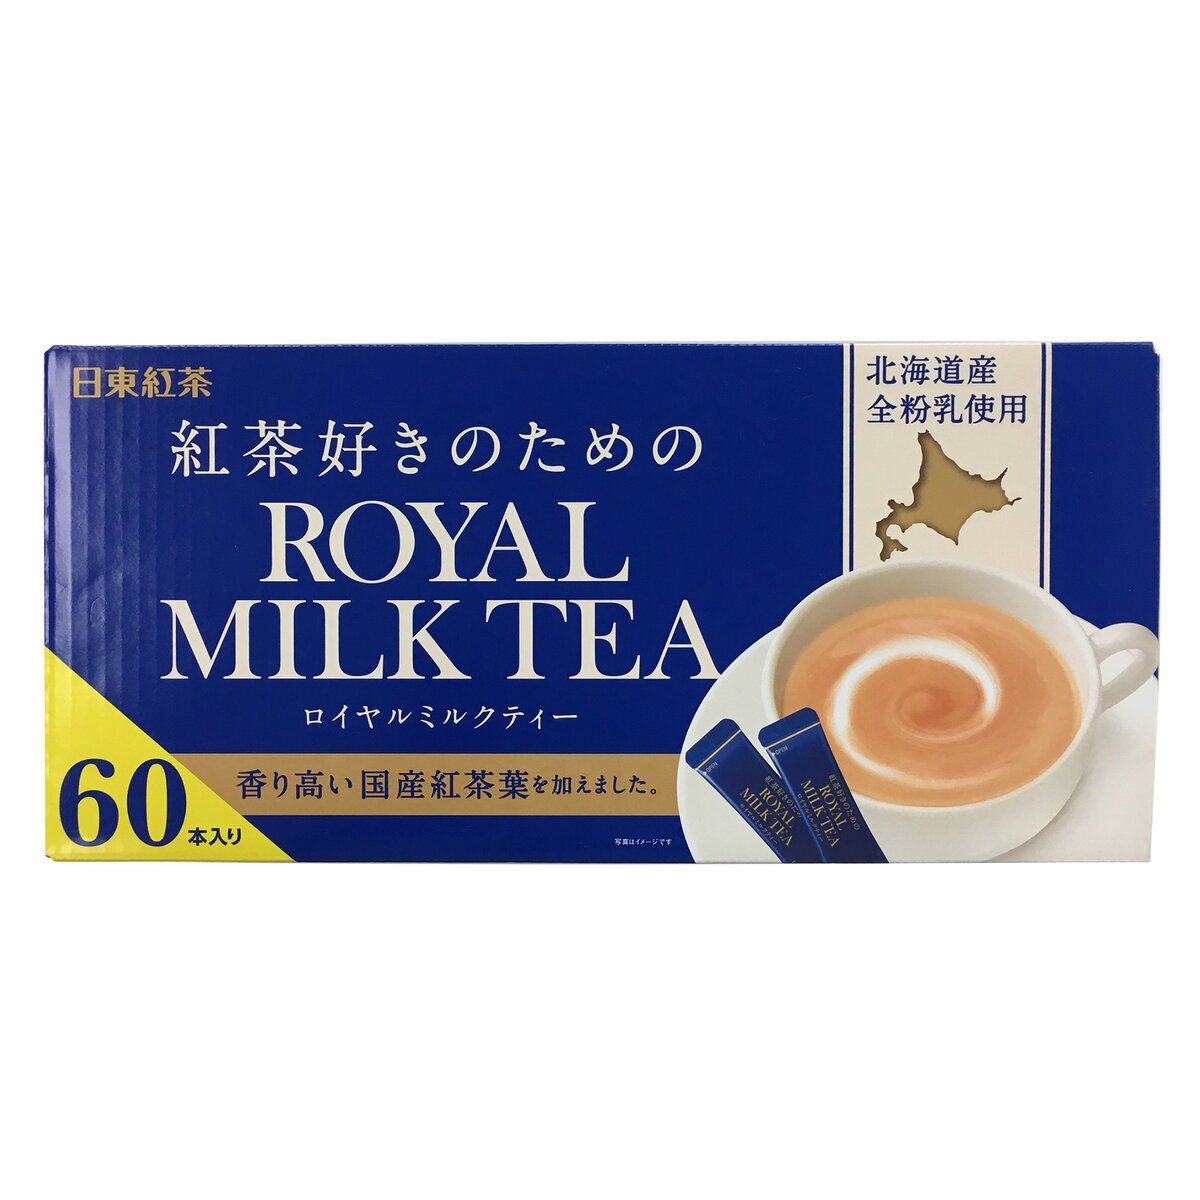 日東紅茶 ロイヤルミルクティー 60P | Costco Japan